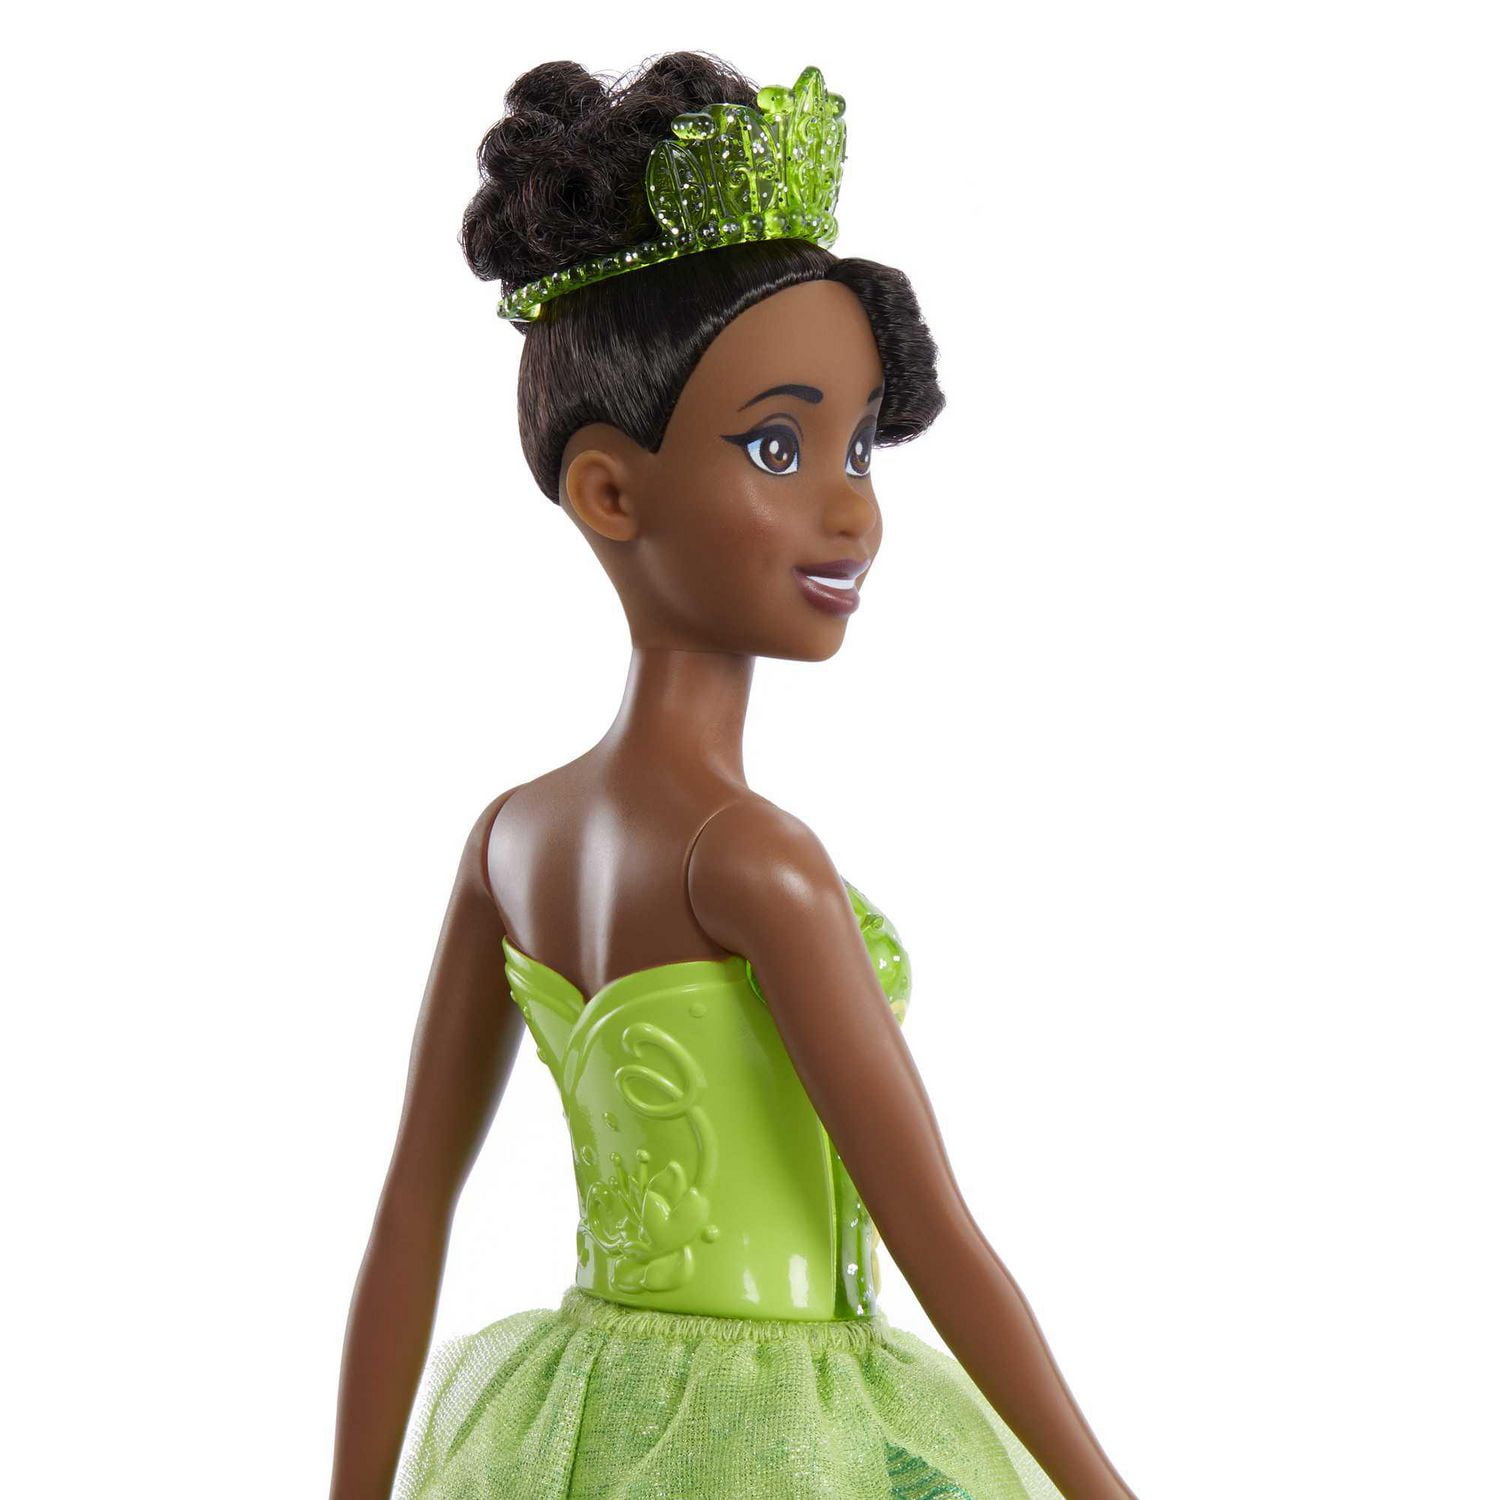 Beading Tiana Princess Gowns Disney Princess Disney Adult Costume